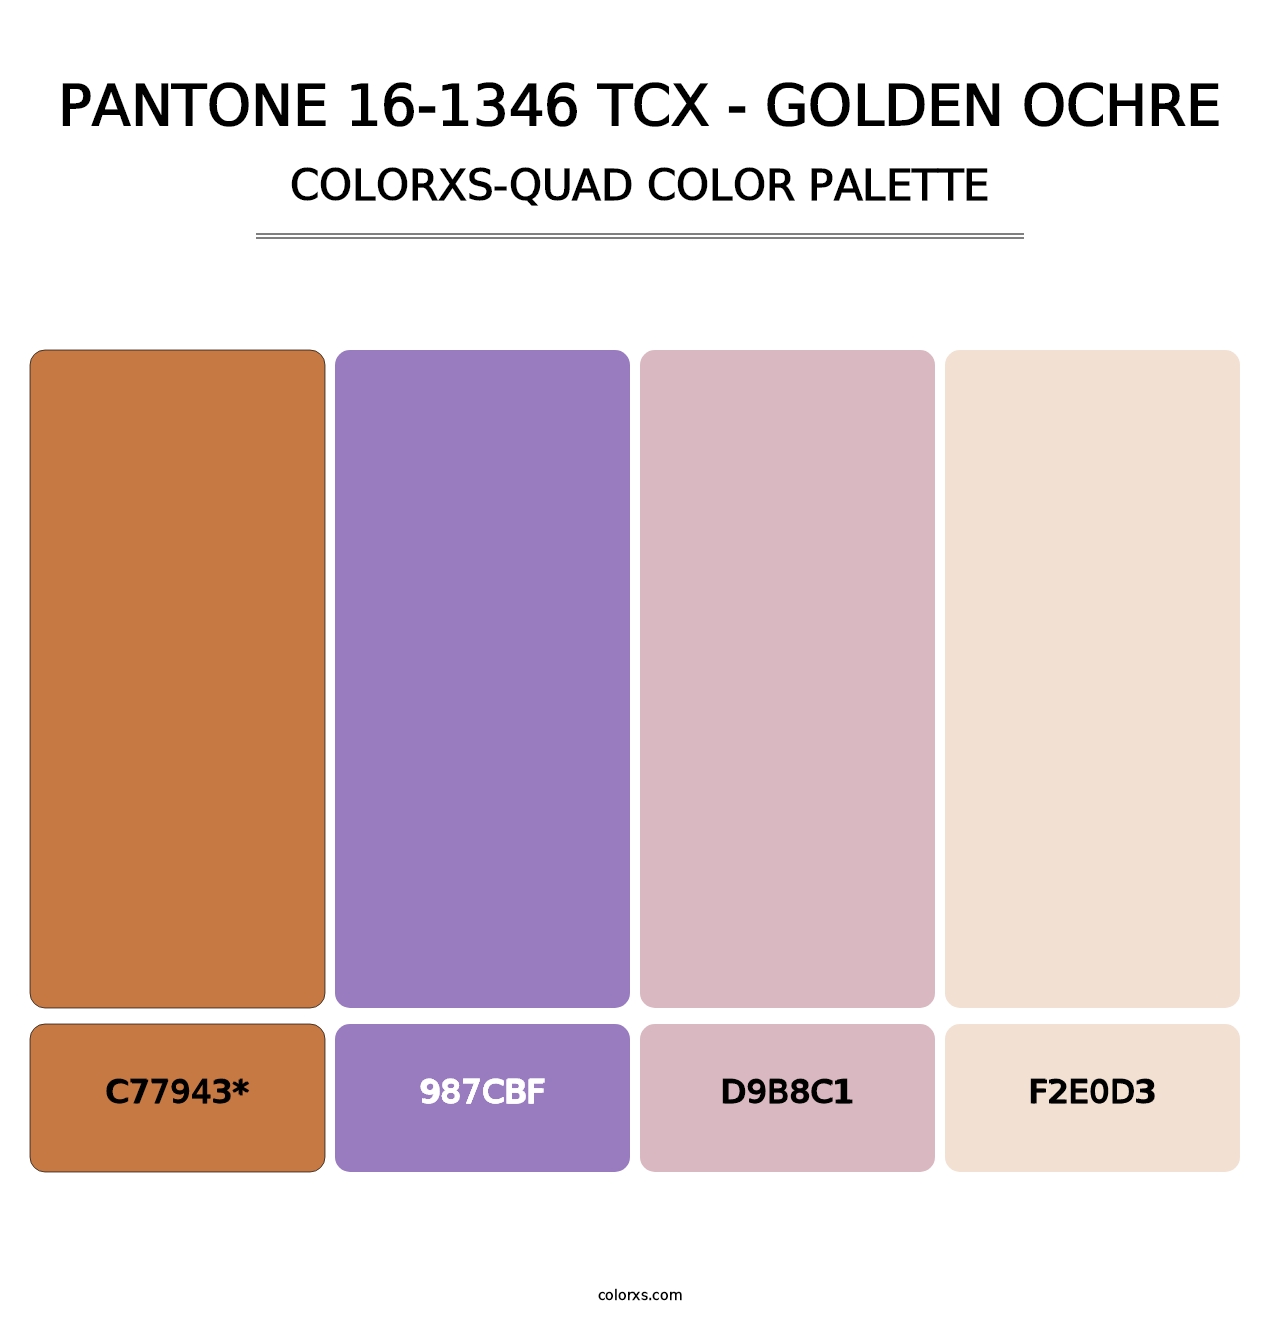 PANTONE 16-1346 TCX - Golden Ochre - Colorxs Quad Palette